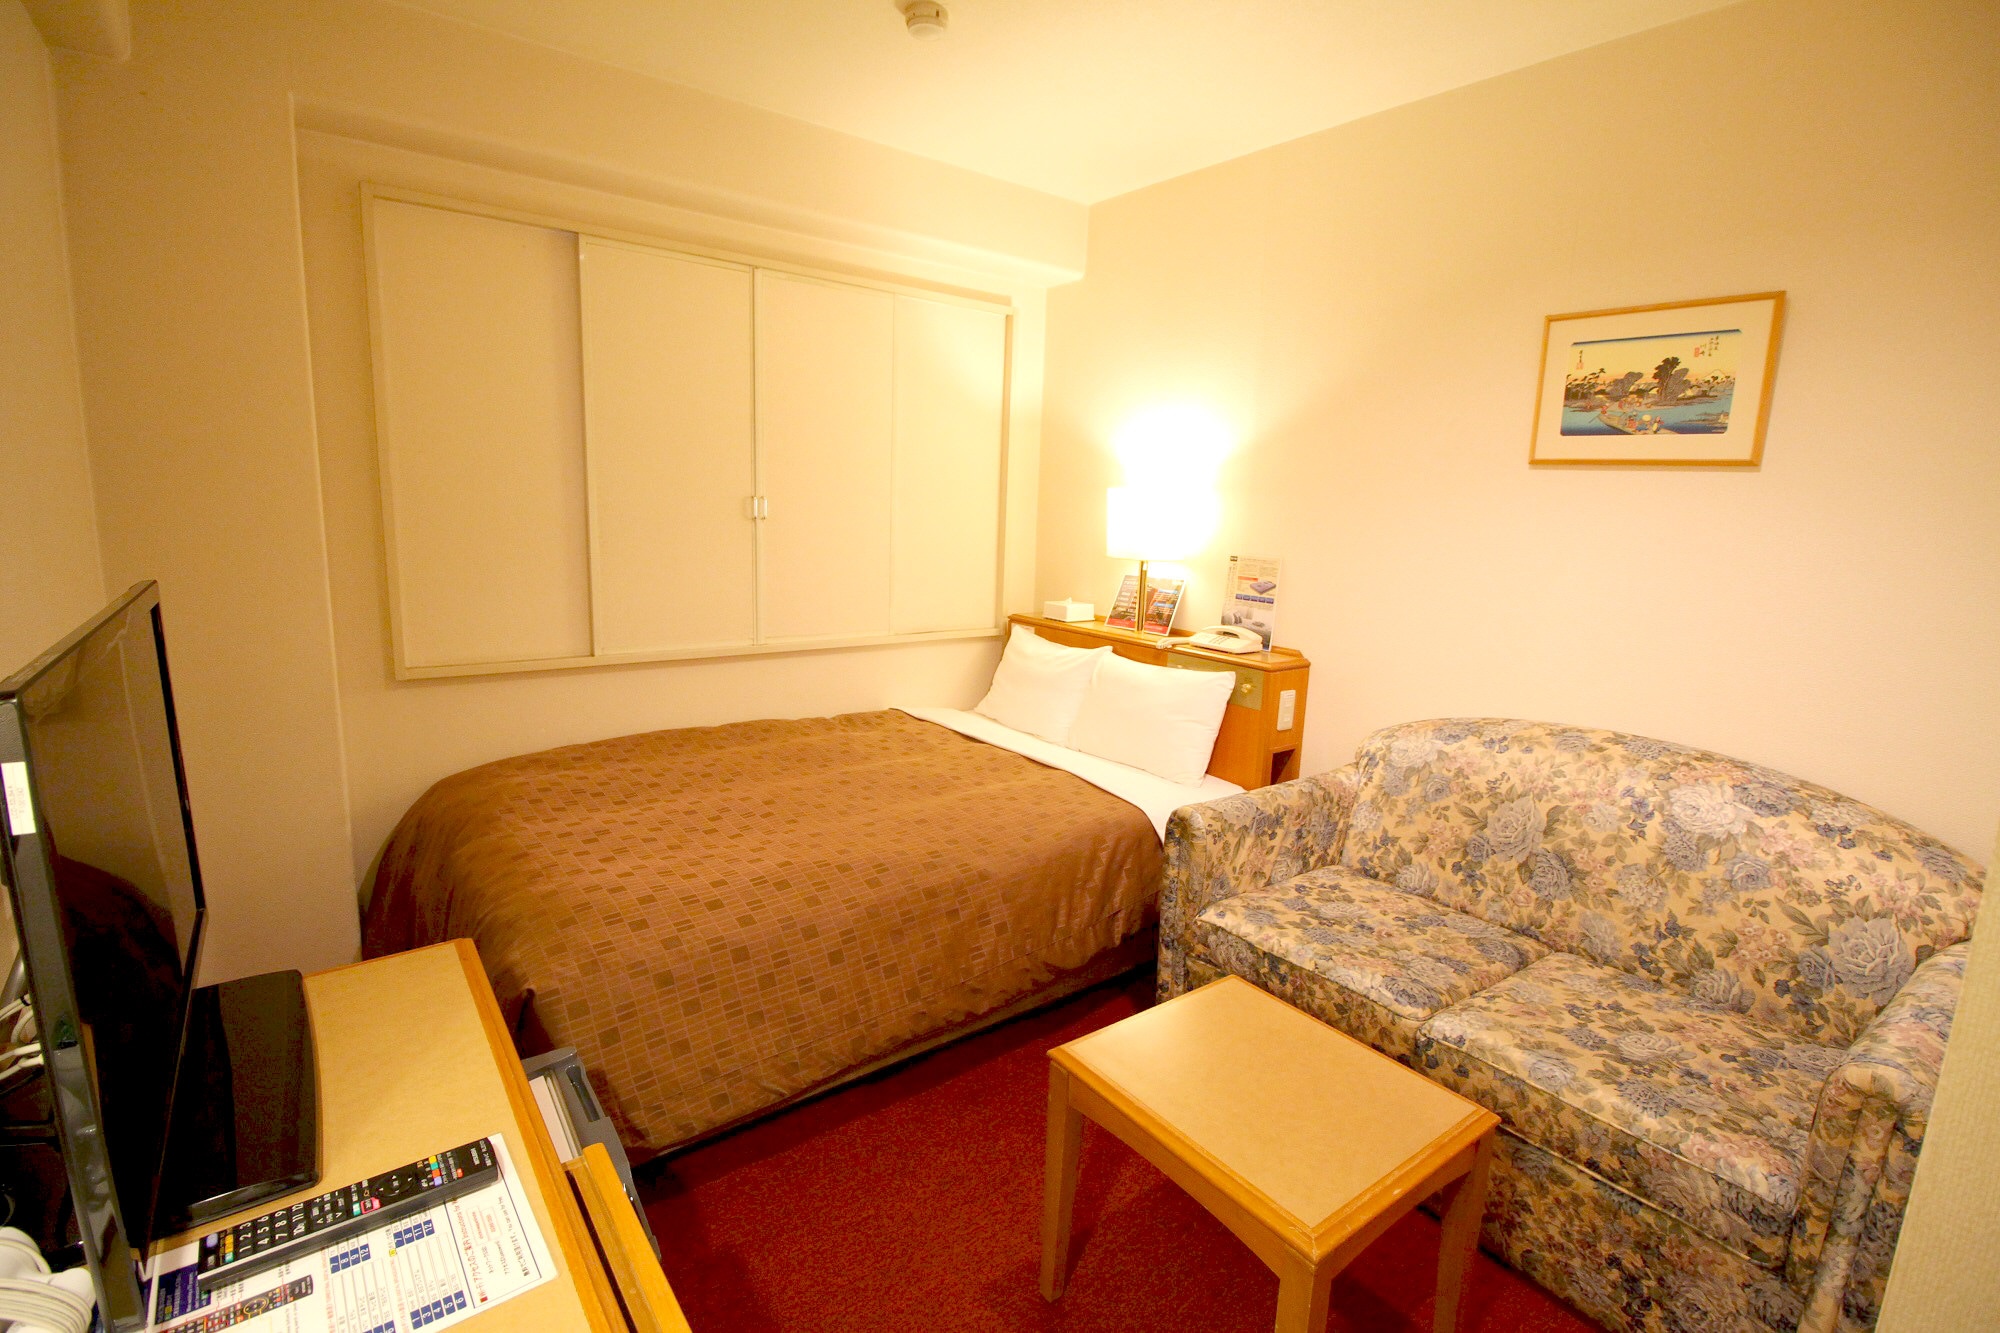 ห้องเตียงใหญ่พร้อมโซฟา ■ เตียง Simmons แบบกว้างขวางพร้อมเตียงกว้าง 135 ซม.